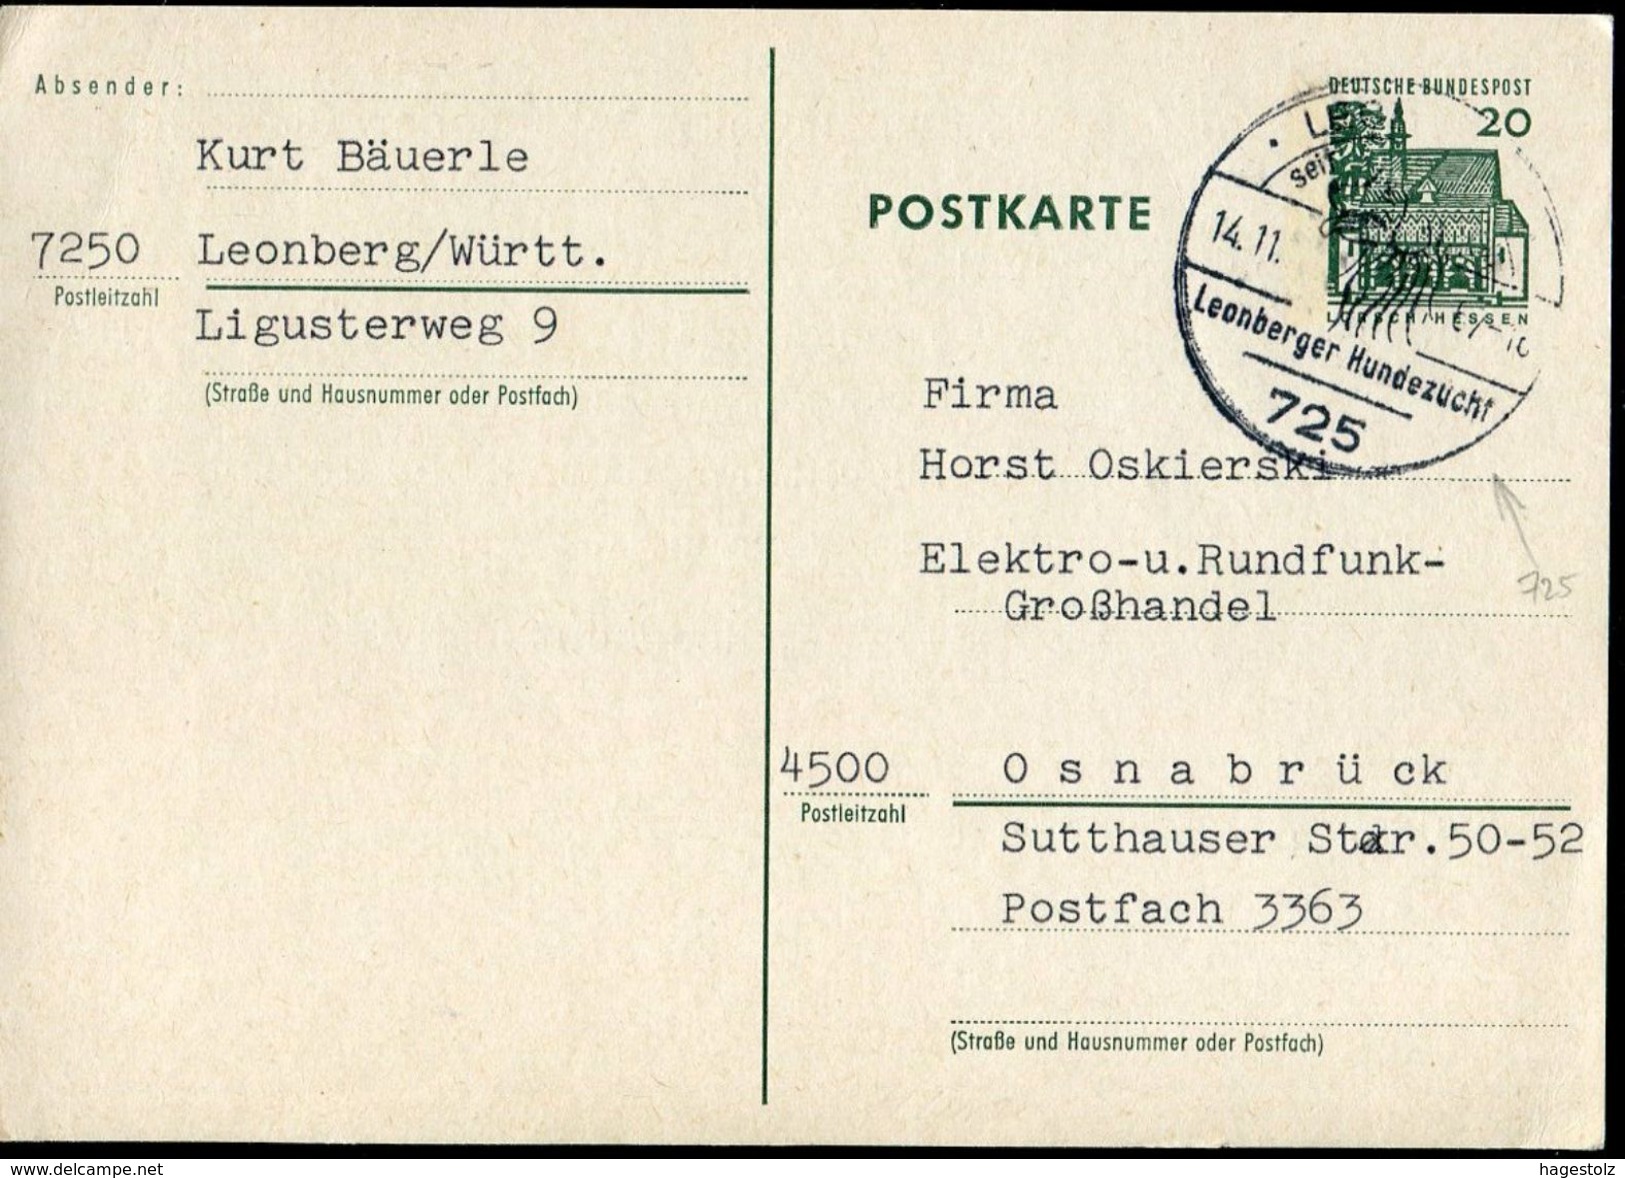 DOG Hund Chien 1967 Deutschland Germany Bund BRD Stationery Card LEONBERG Hundezucht 725 Werbestempel Slogan Cancel - Cani